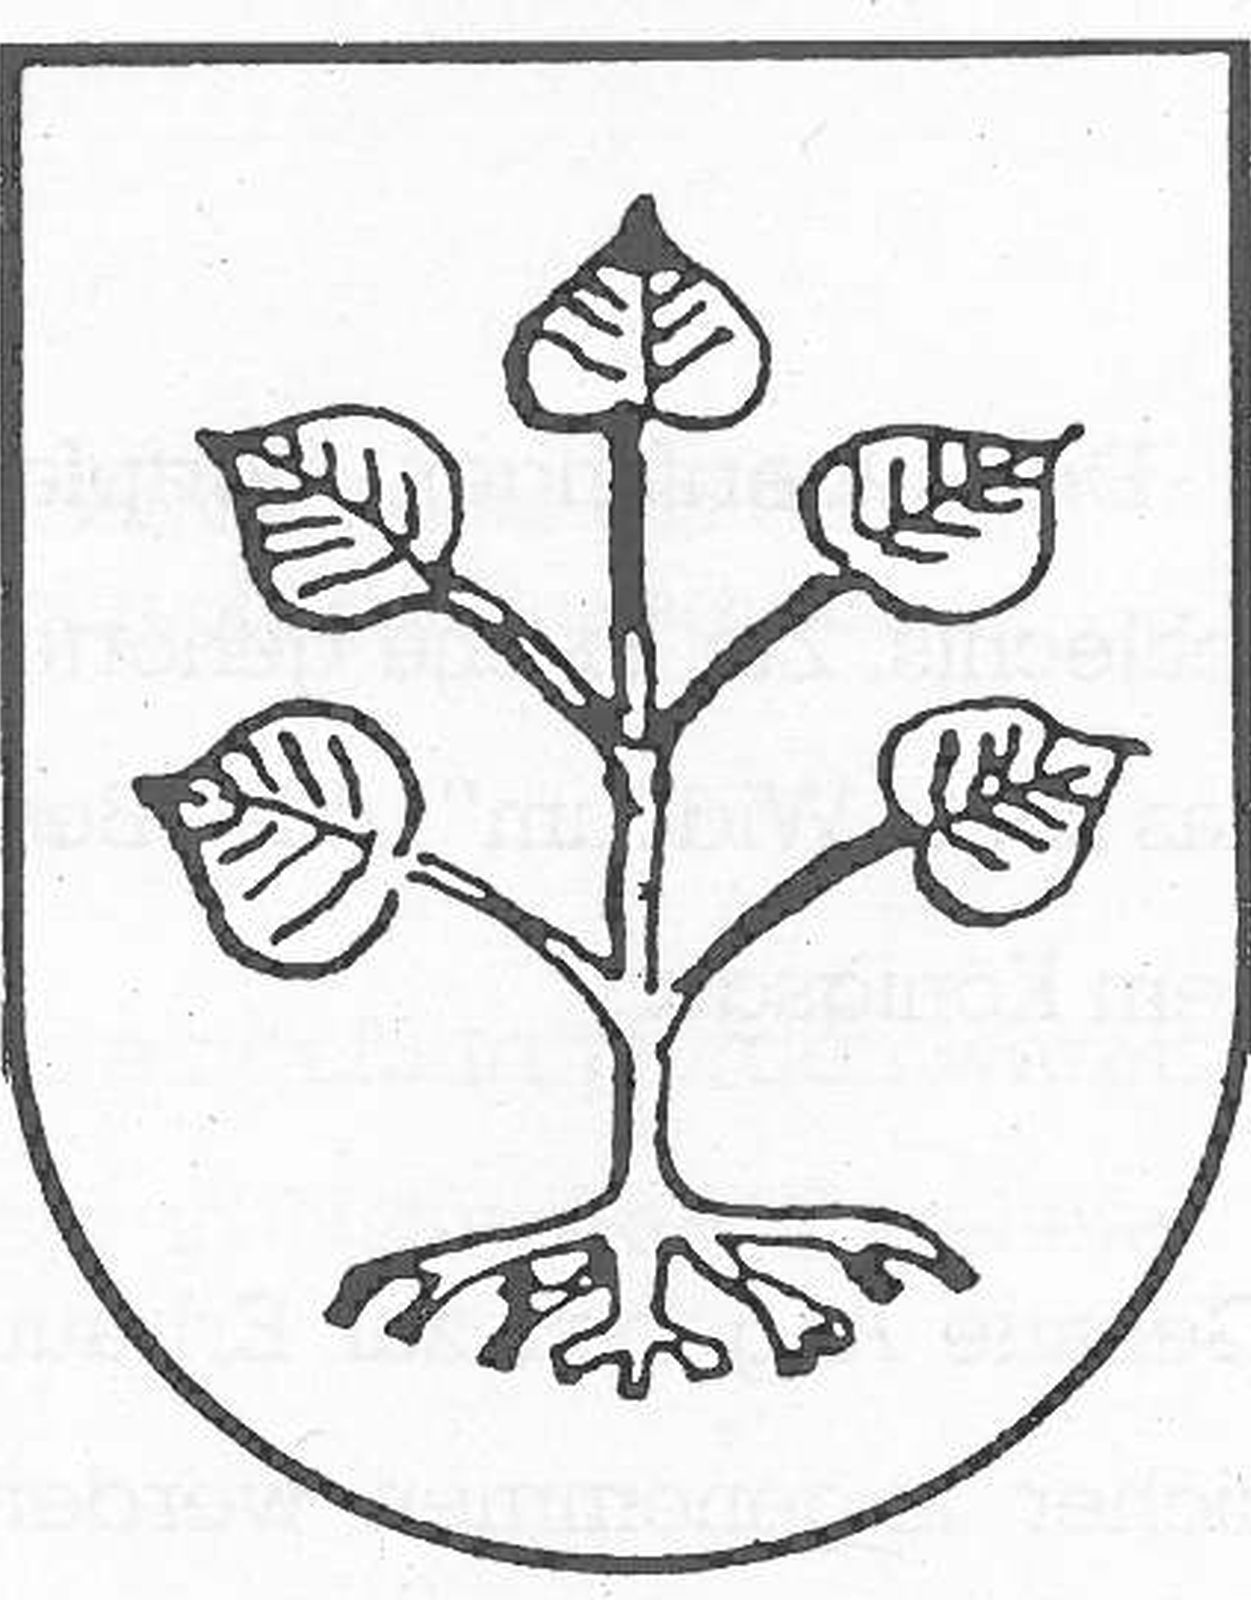  Schopflocher Skizzen Wappen von Unteriflingen - Bild wird mit einem klick vergrößert 